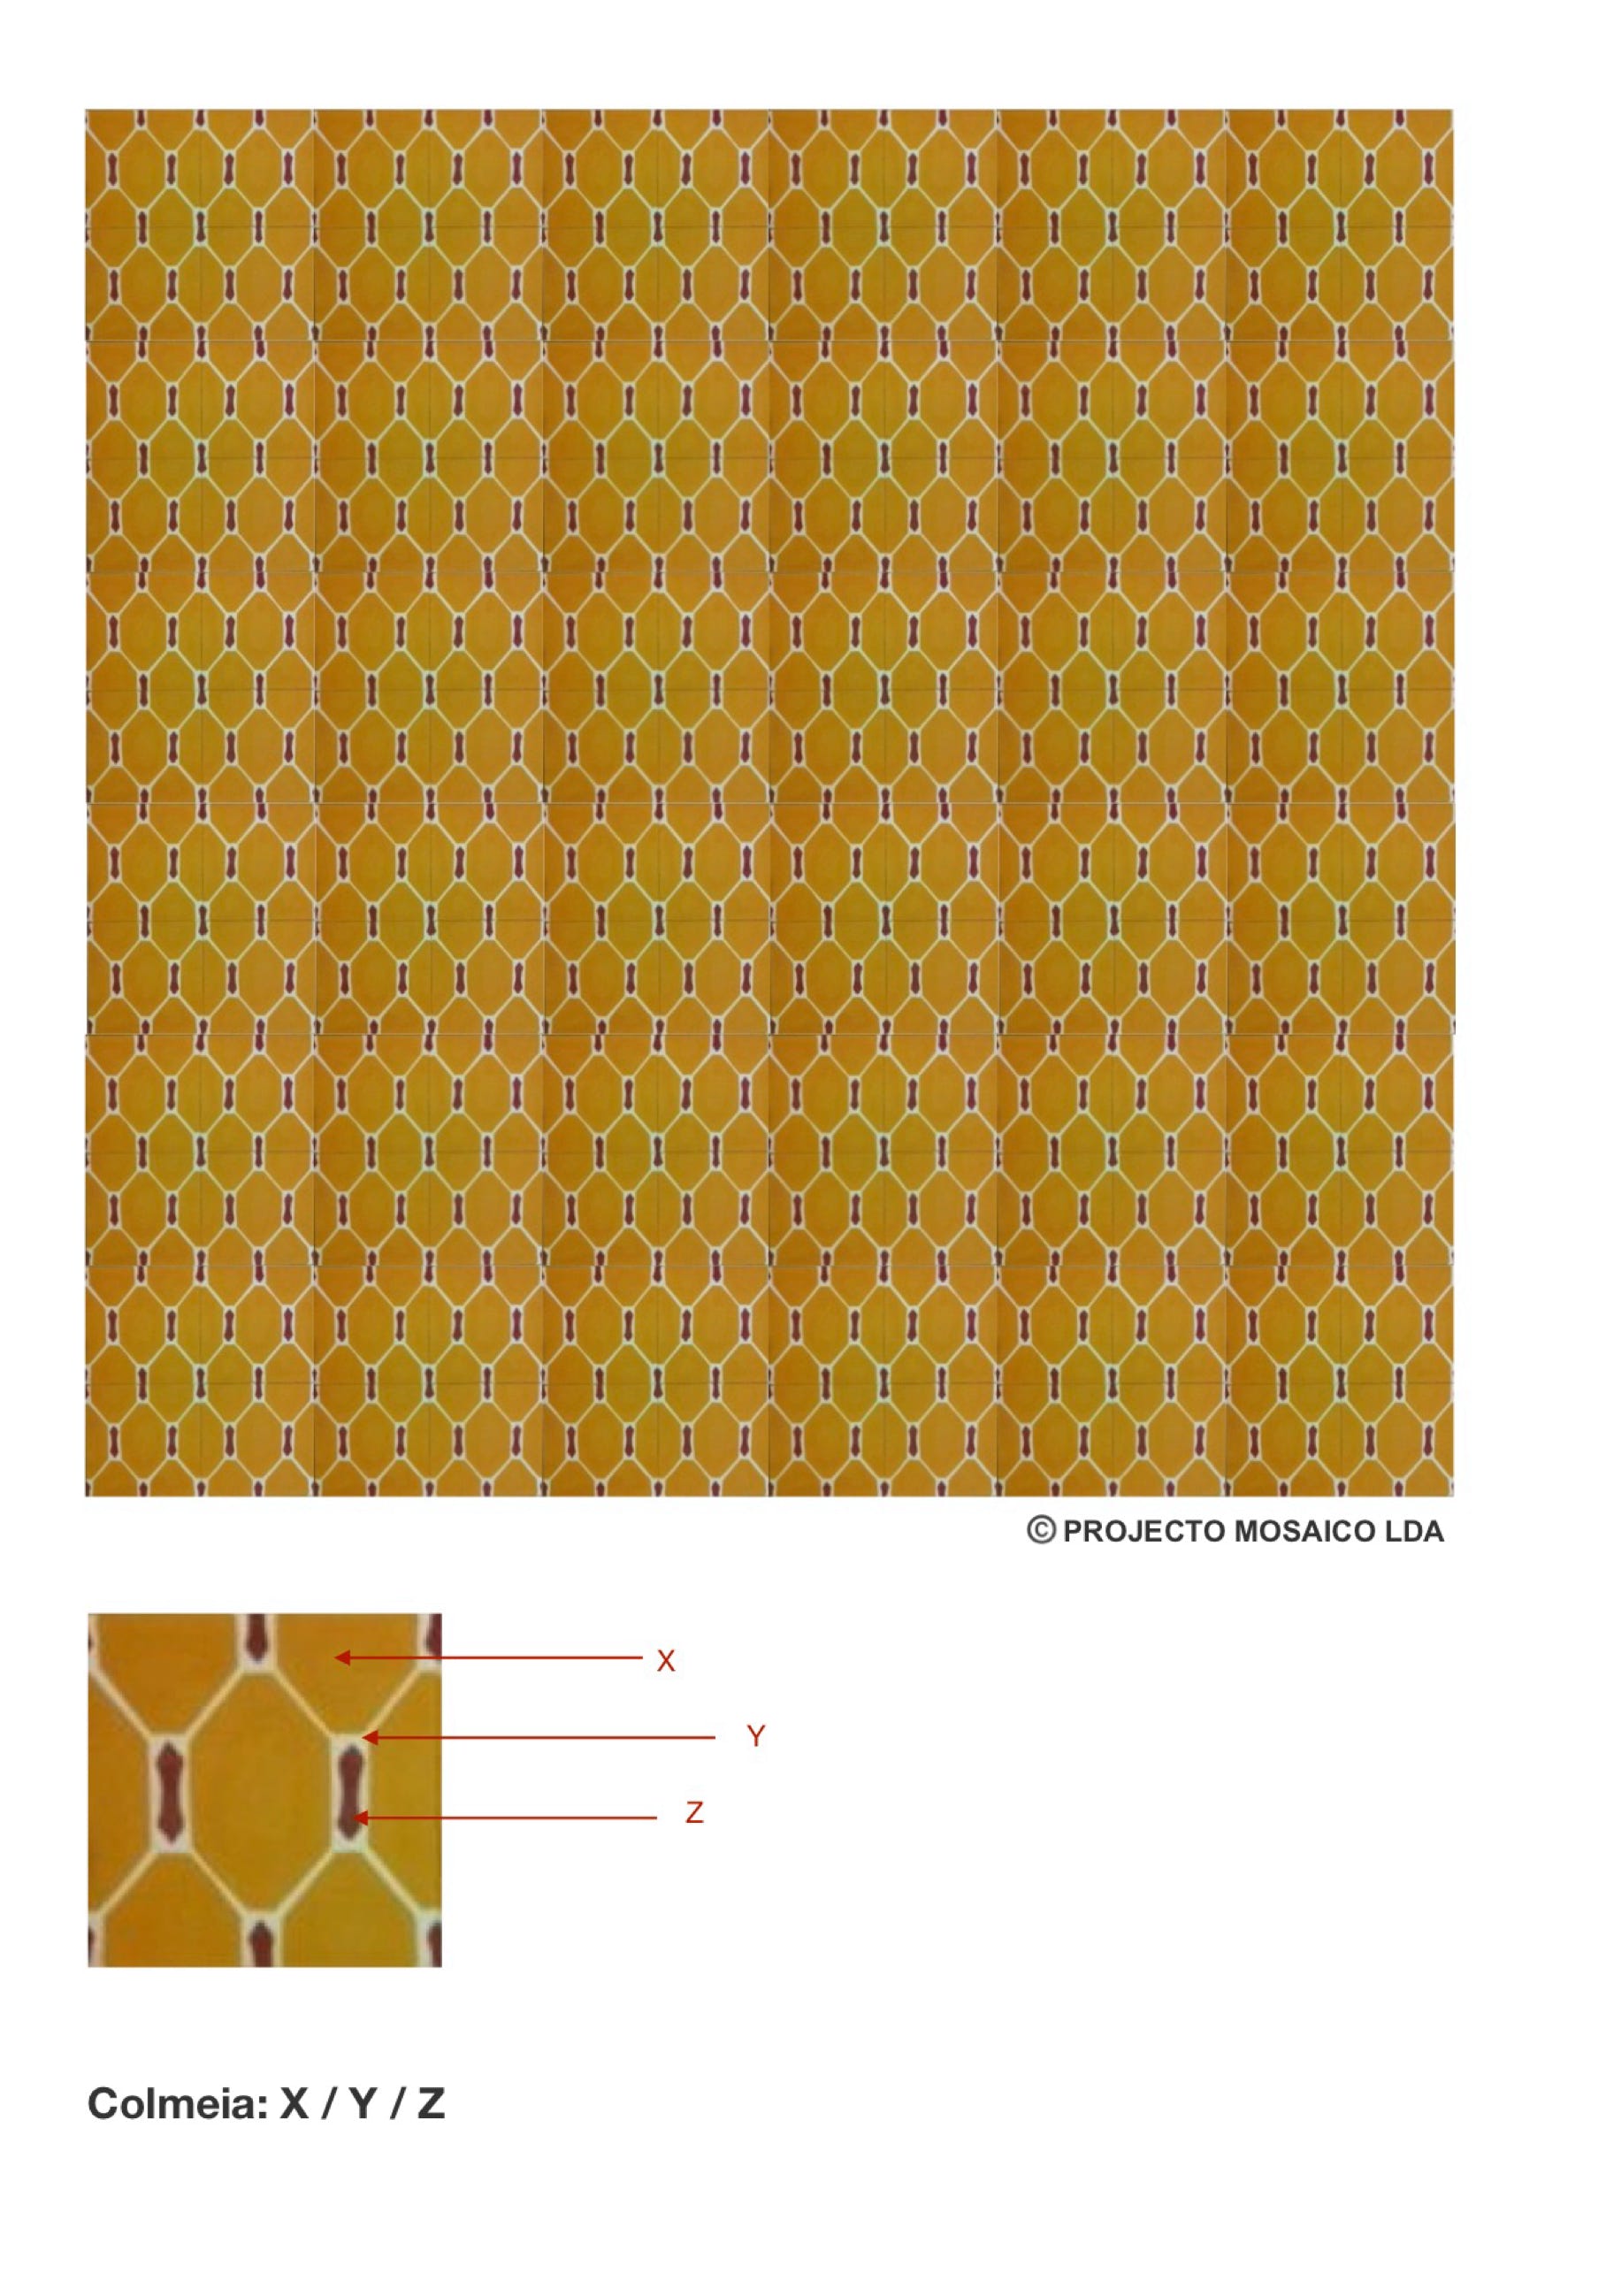 illustração de aplicação do mosaico hidráulico ref: Colmeia